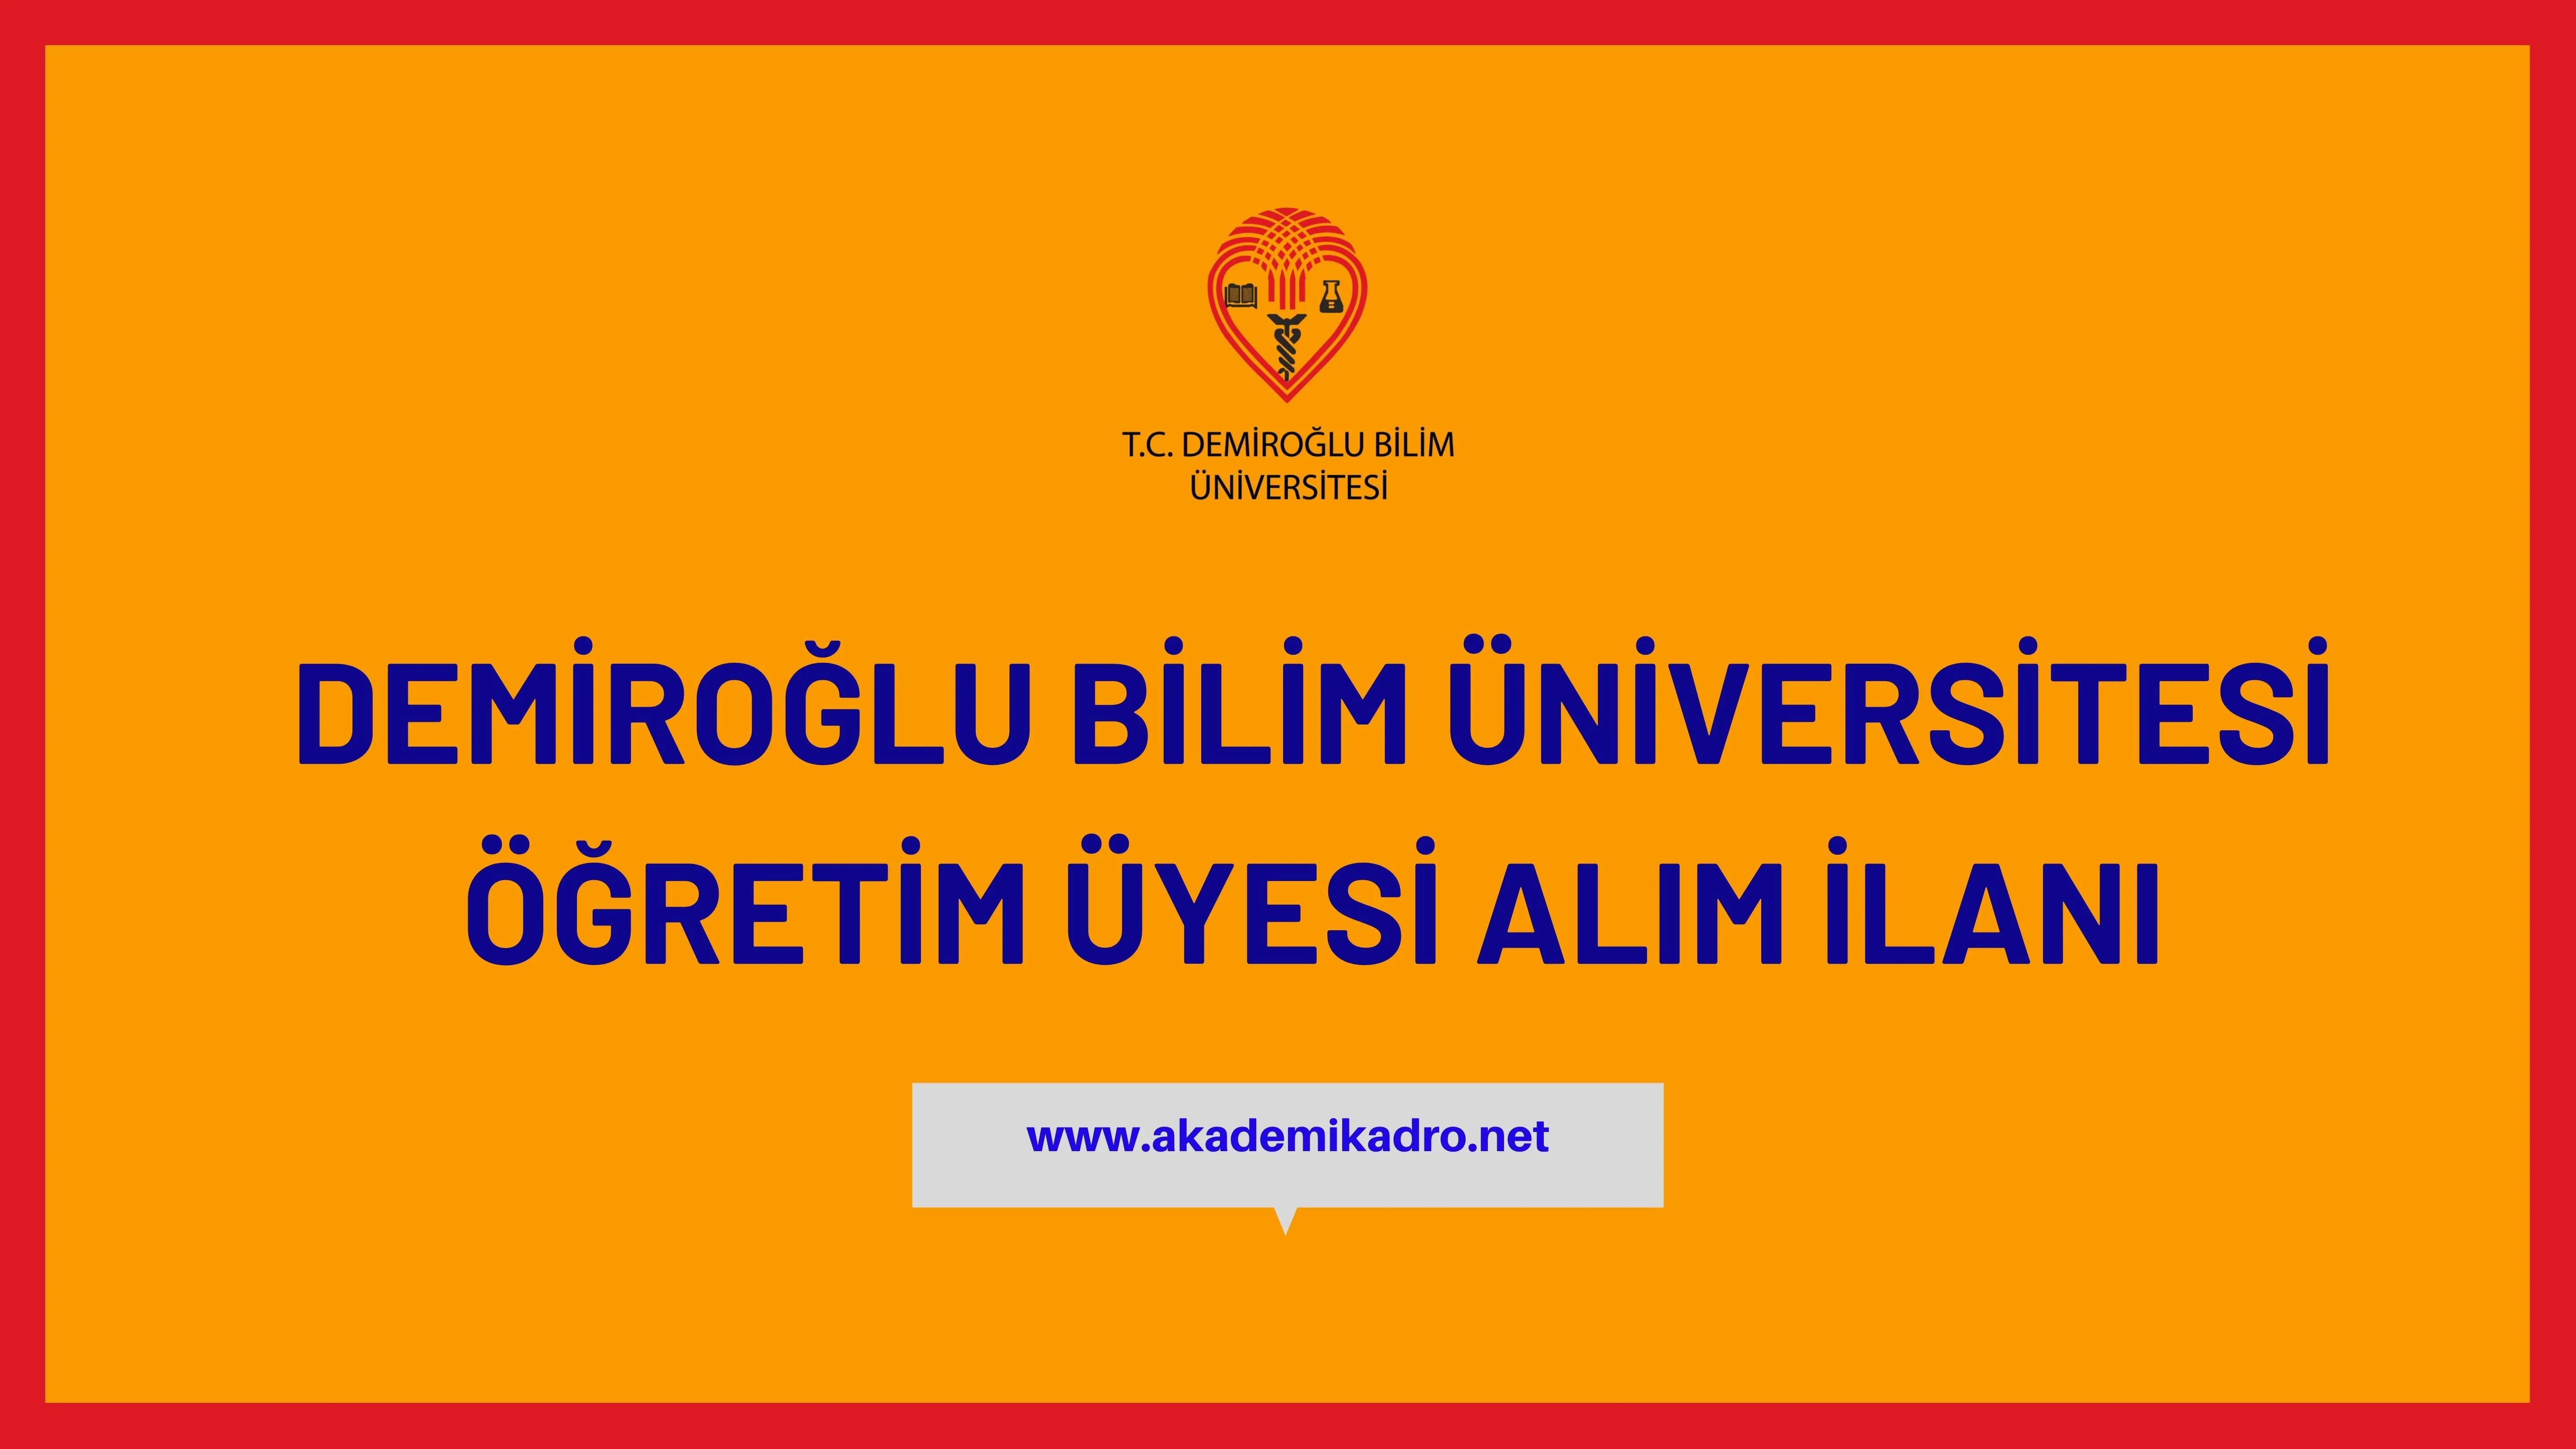 Demiroğlu Bilim Üniversitesi çeşitli branşlarda 5 akademik personel alacak.